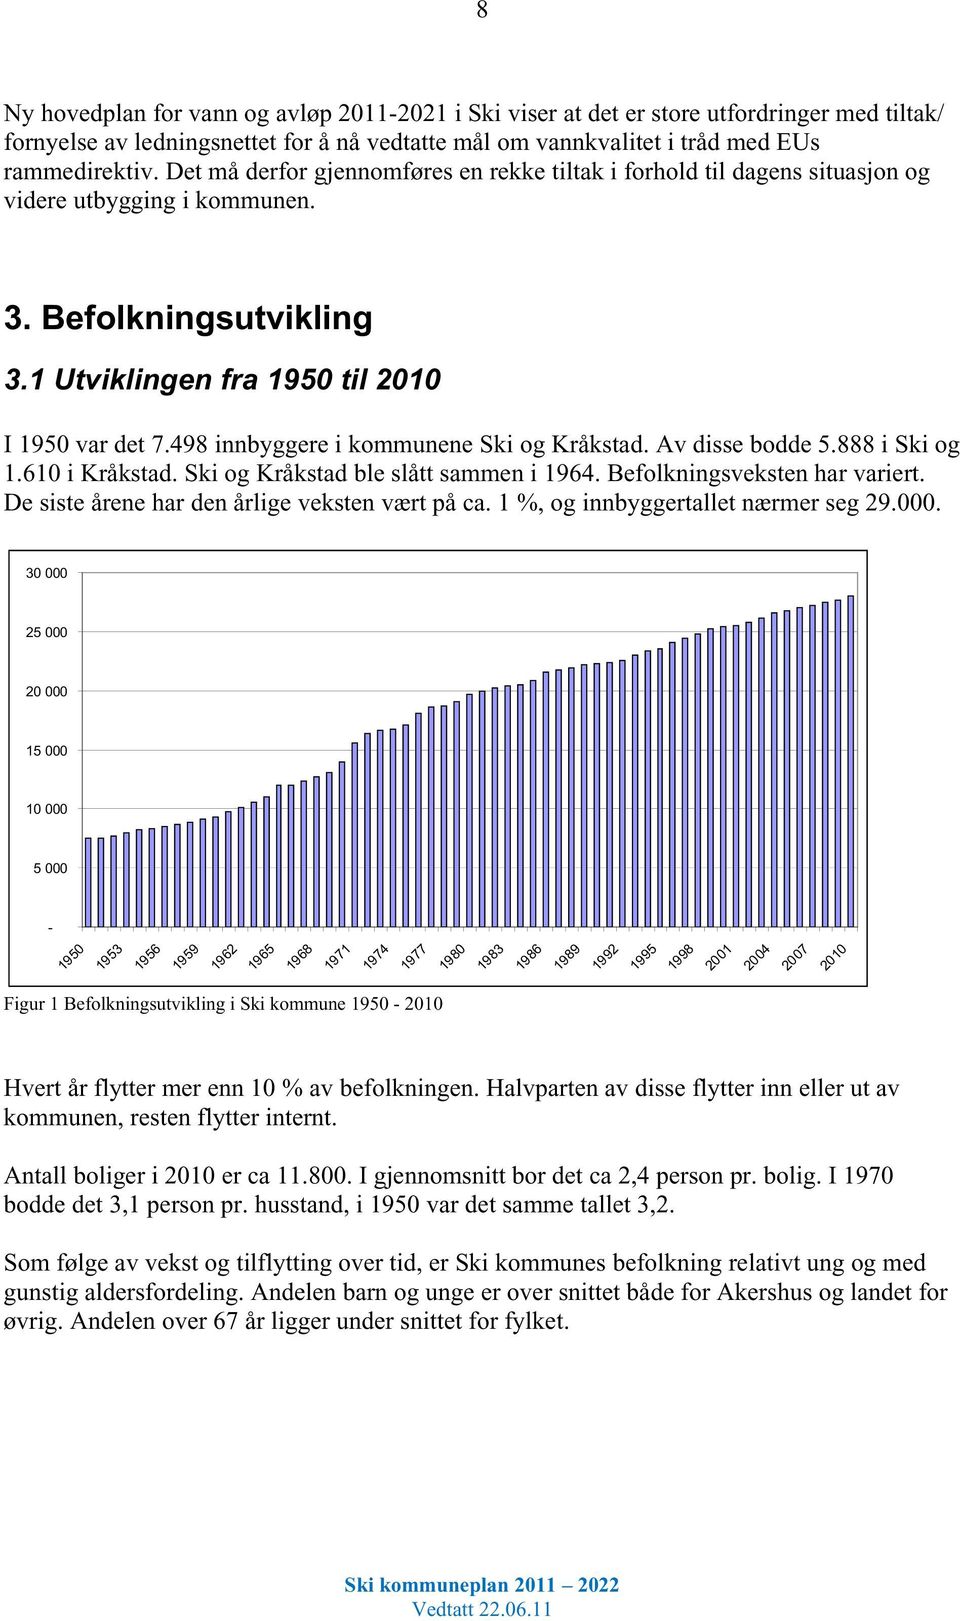 498 innbyggere i kommunene Ski og Kråkstad. Av disse bodde 5.888 i Ski og 1.610 i Kråkstad. Ski og Kråkstad ble slått sammen i 1964. Befolkningsveksten har variert.